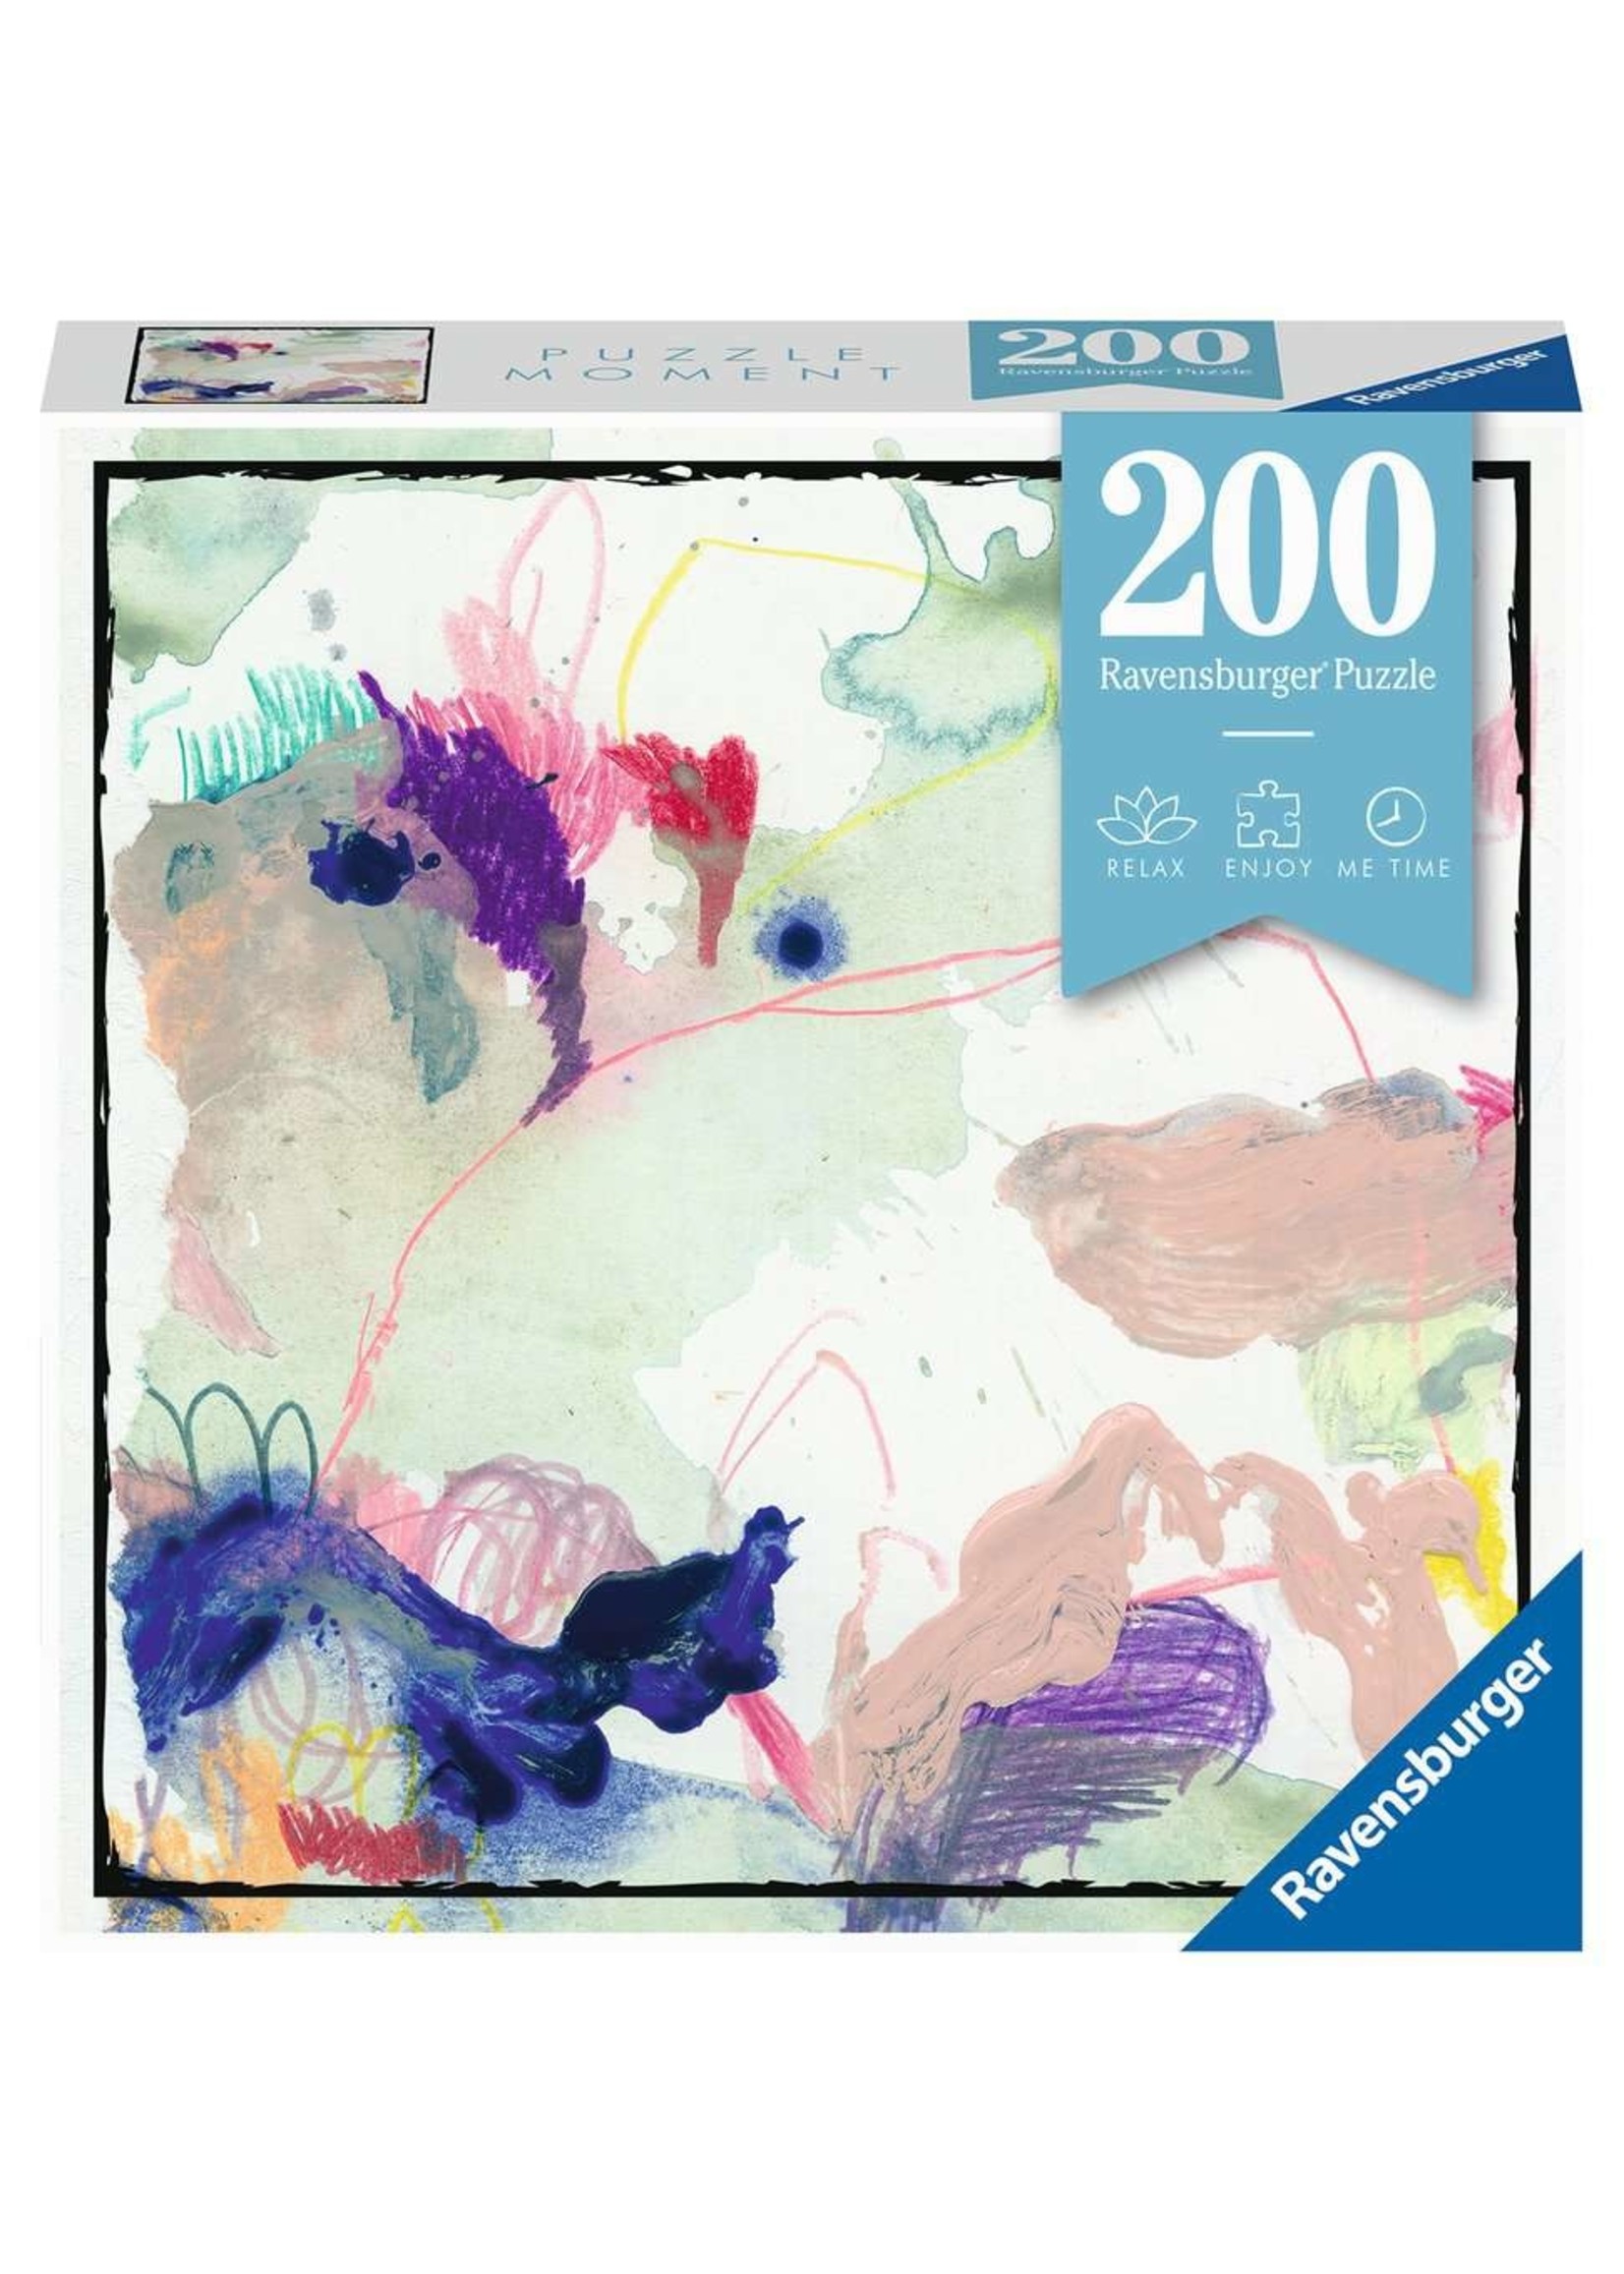 Ravensburger Puzzle Moment: Colorsplash - 200 Piece Puzzle